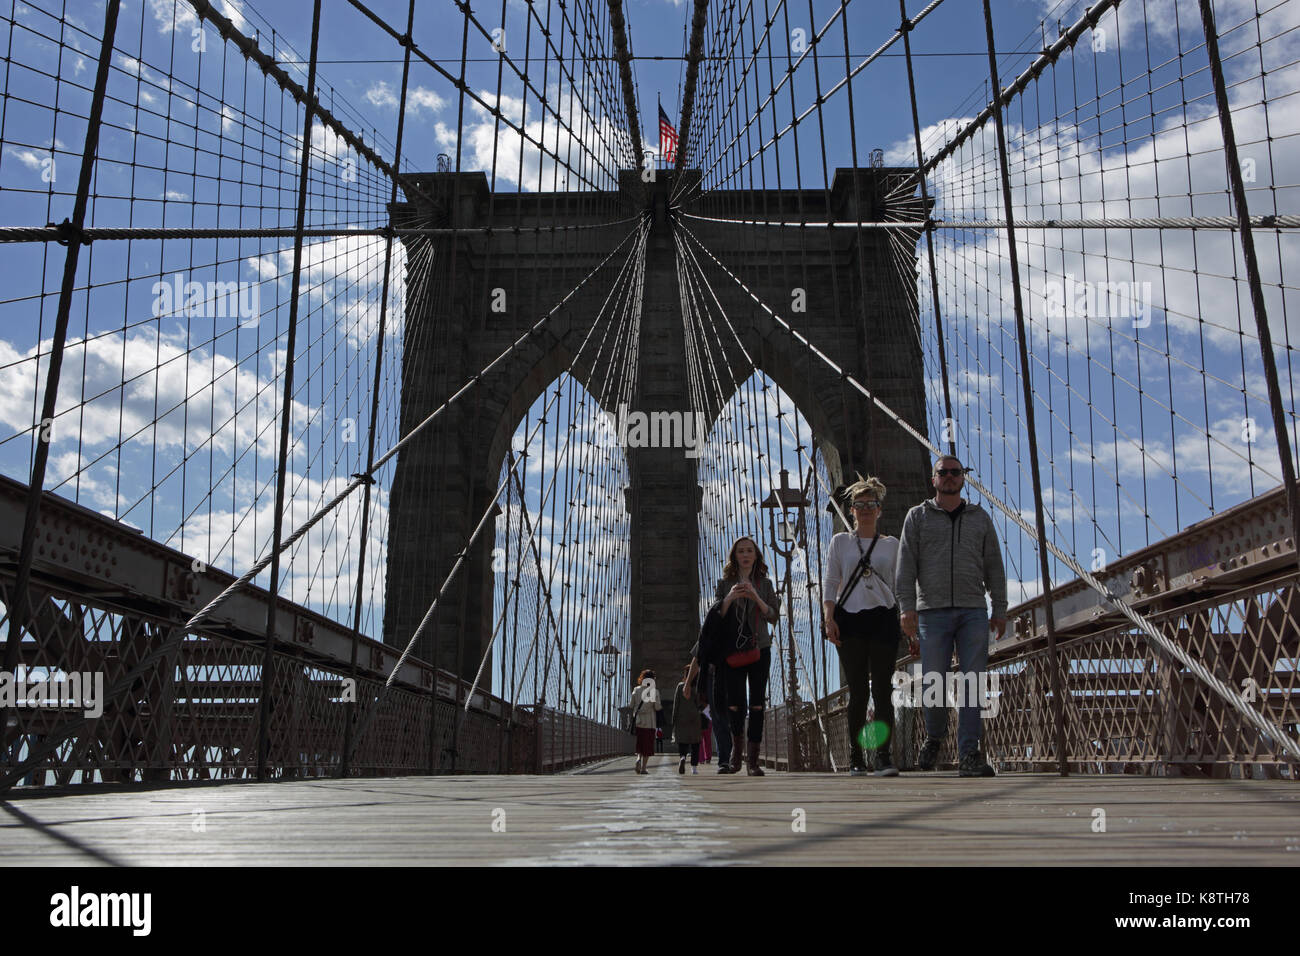 Nueva York, NY, Estados Unidos - 3 de mayo de 2017: Los gusanos ojos vista de gente caminando a Manhattan cruzando el puente de Brooklyn en un día soleado Foto de stock